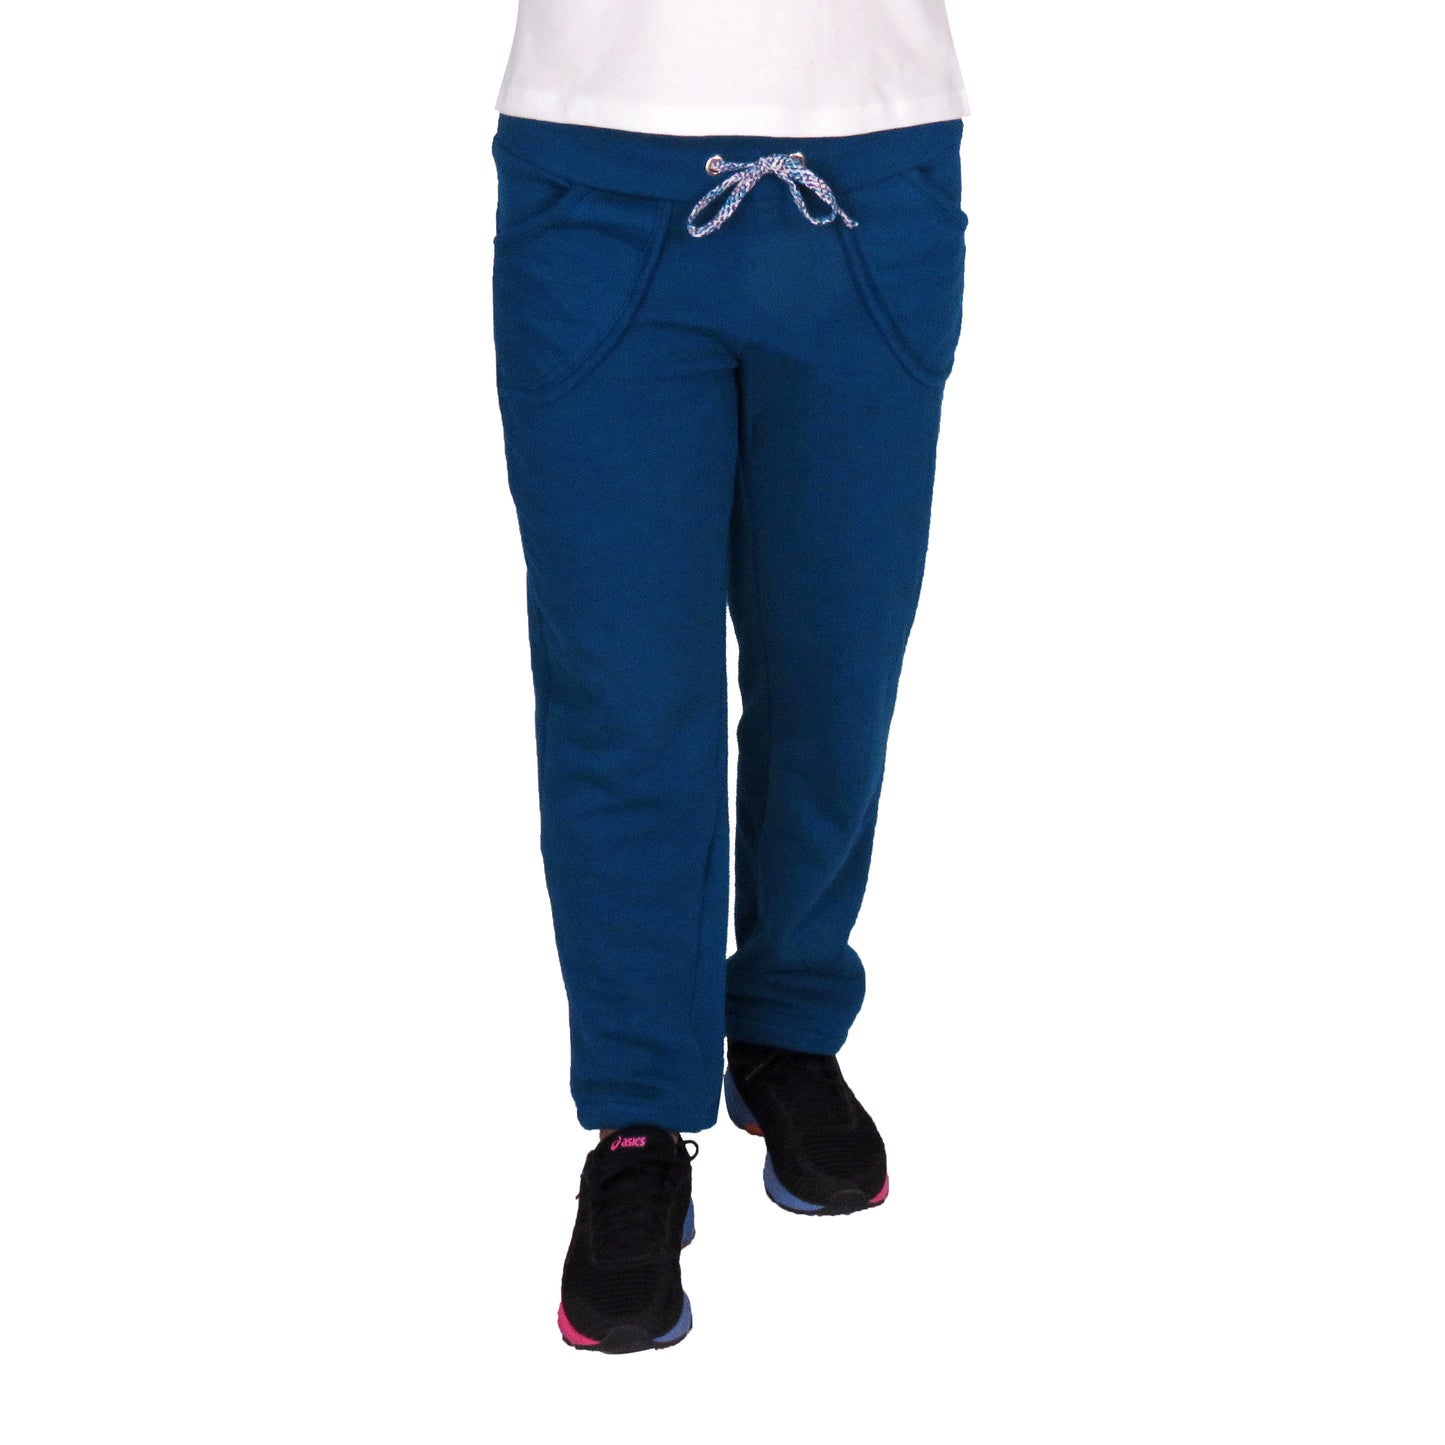 Blue Fleece Lower With Side Stripe & Pockets